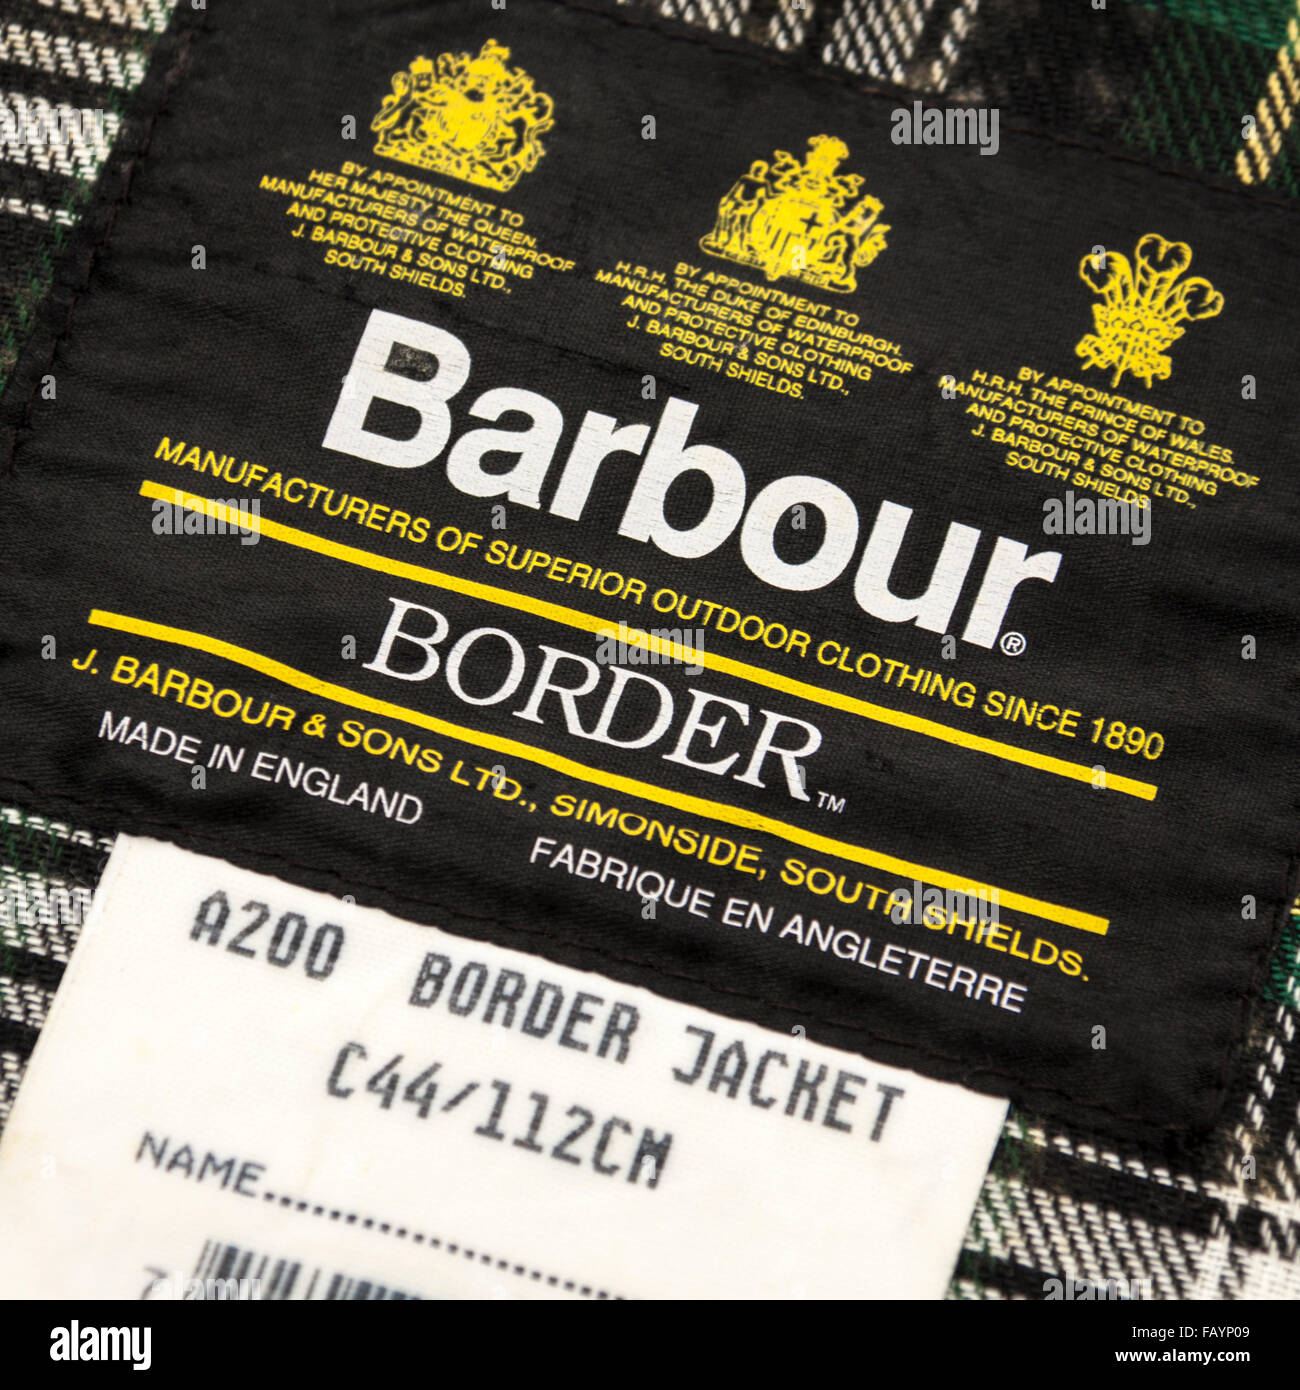 Beschriften Sie innen eine Barbour A200 gewachst Border Jacke, mit dem königlichen Siegel. Stockfoto